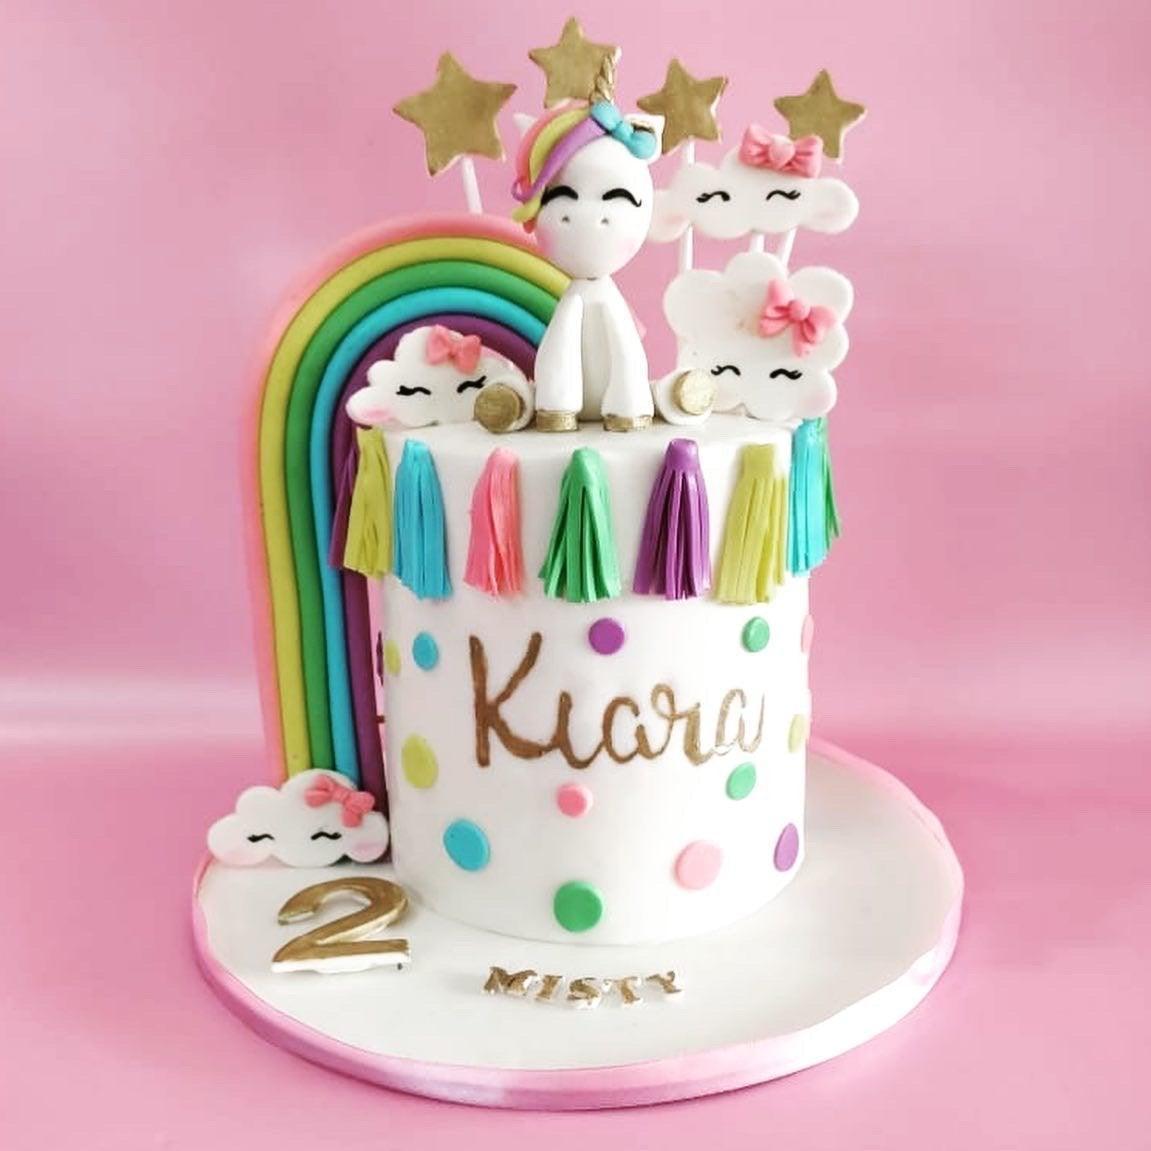 Rainbow Unicorn Cake | Customised cakes by Kukkr India